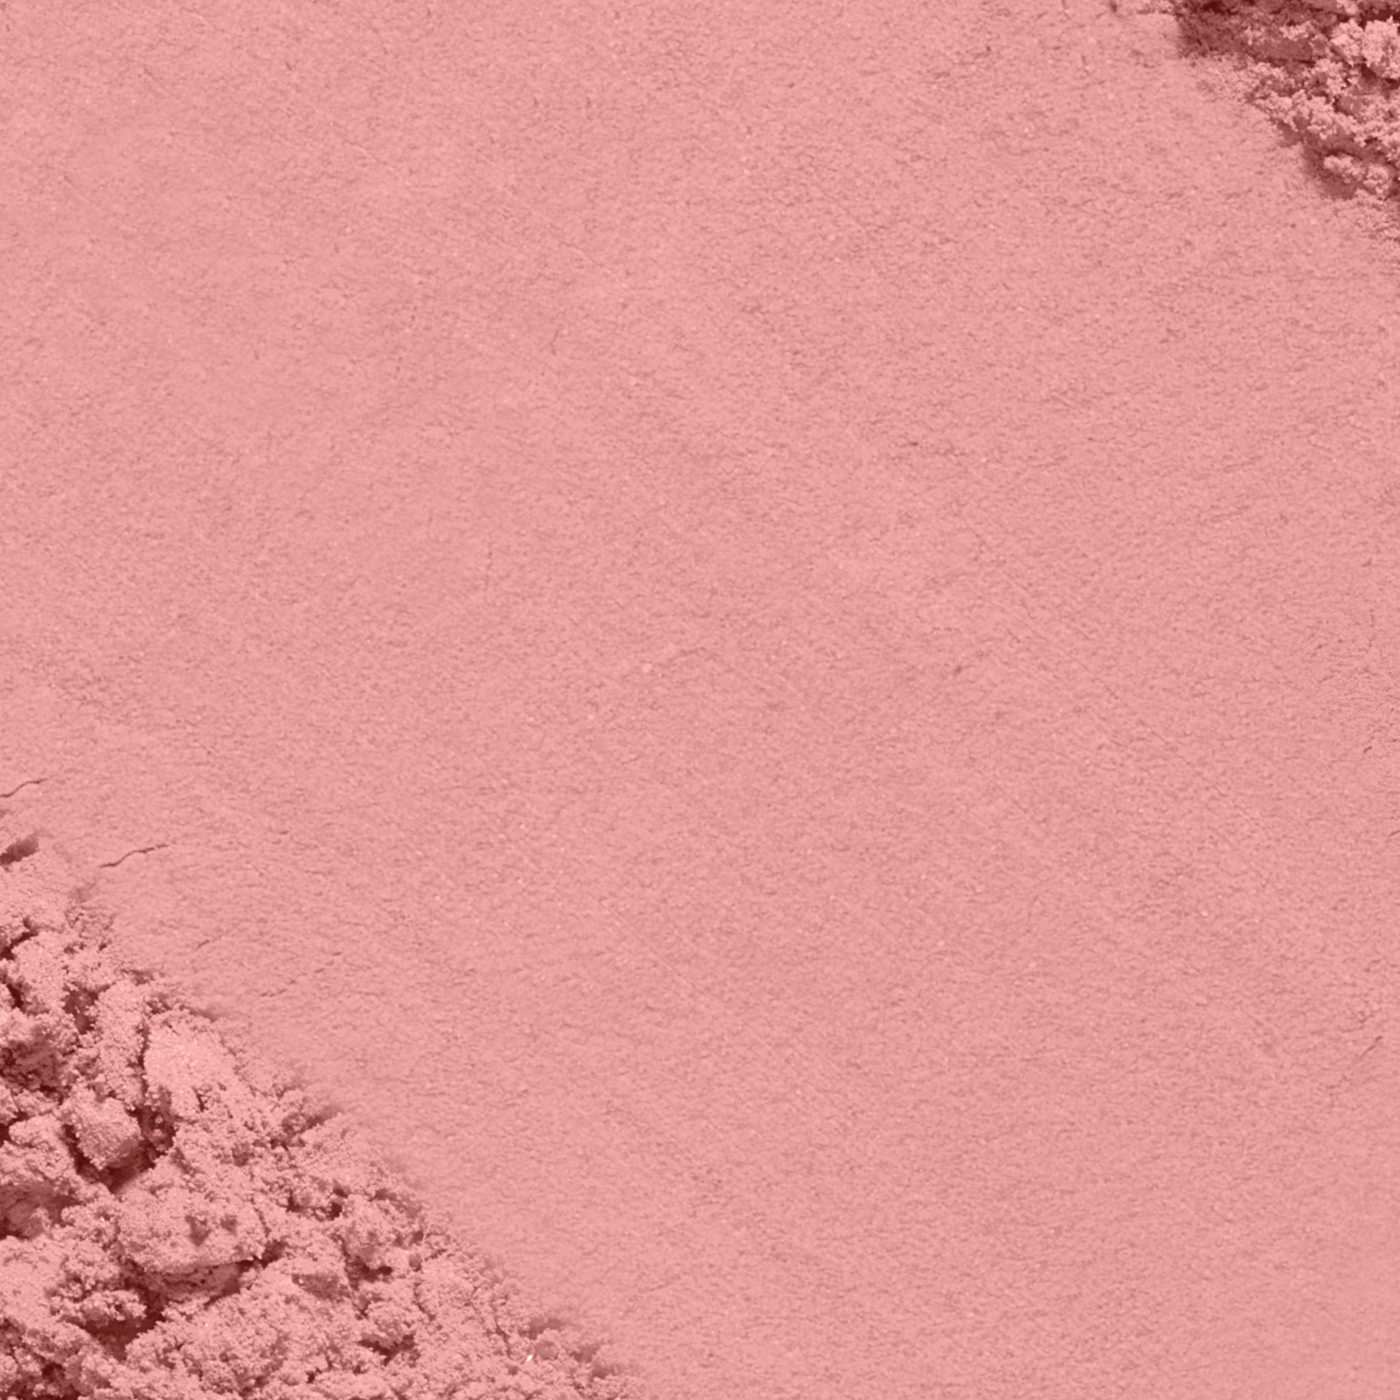 L'Oréal Paris True Match Super-Blendable Blush, Soft Powder Texture Tender Rose; image 4 of 5